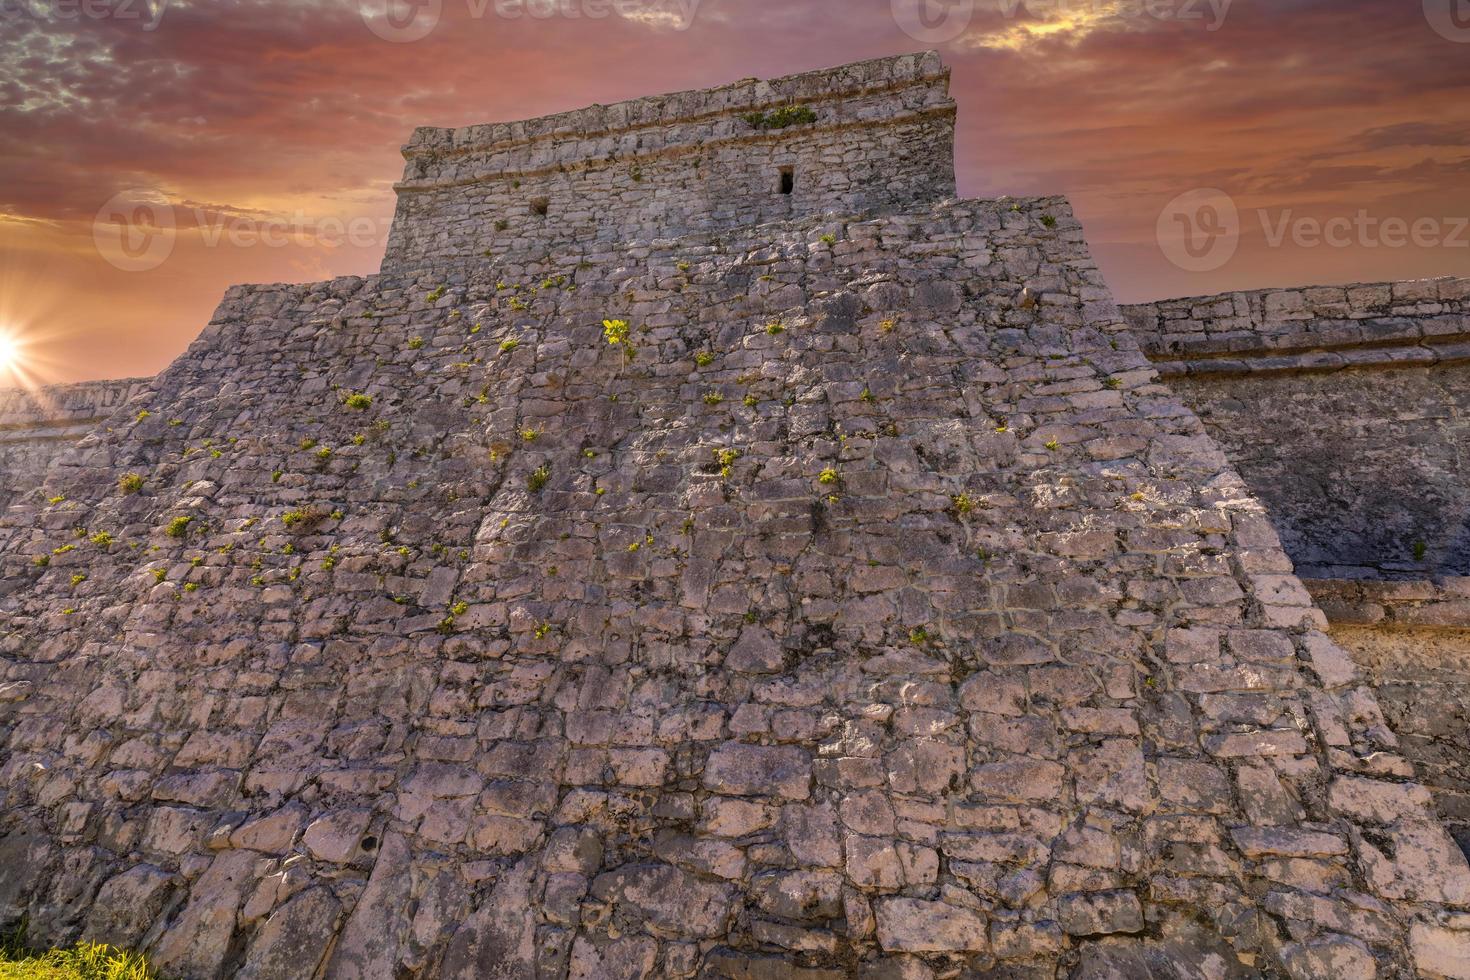 pirámide el castillo, el castillo, en la zona arqueológica de tulum con pirámides mayas y ruinas ubicadas en la pintoresca costa del océano de la provincia de quintana roo foto